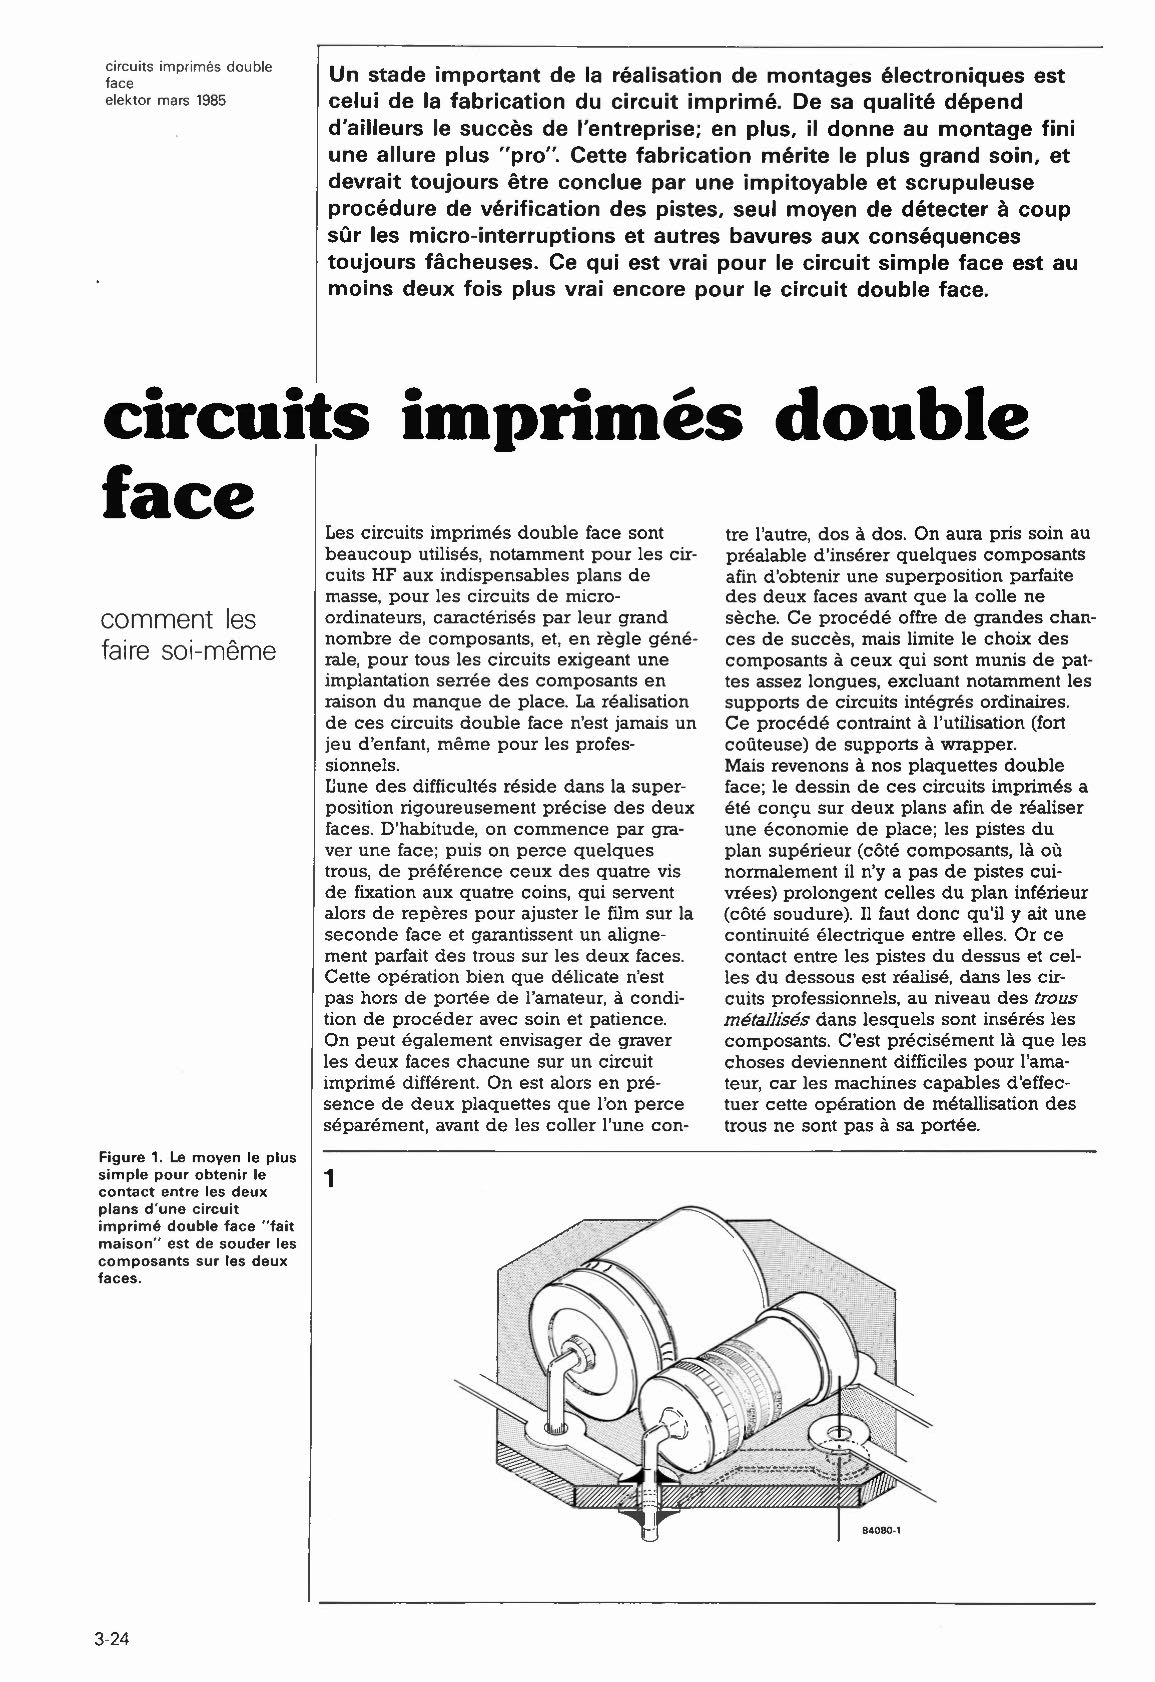 circuits imprimés double face